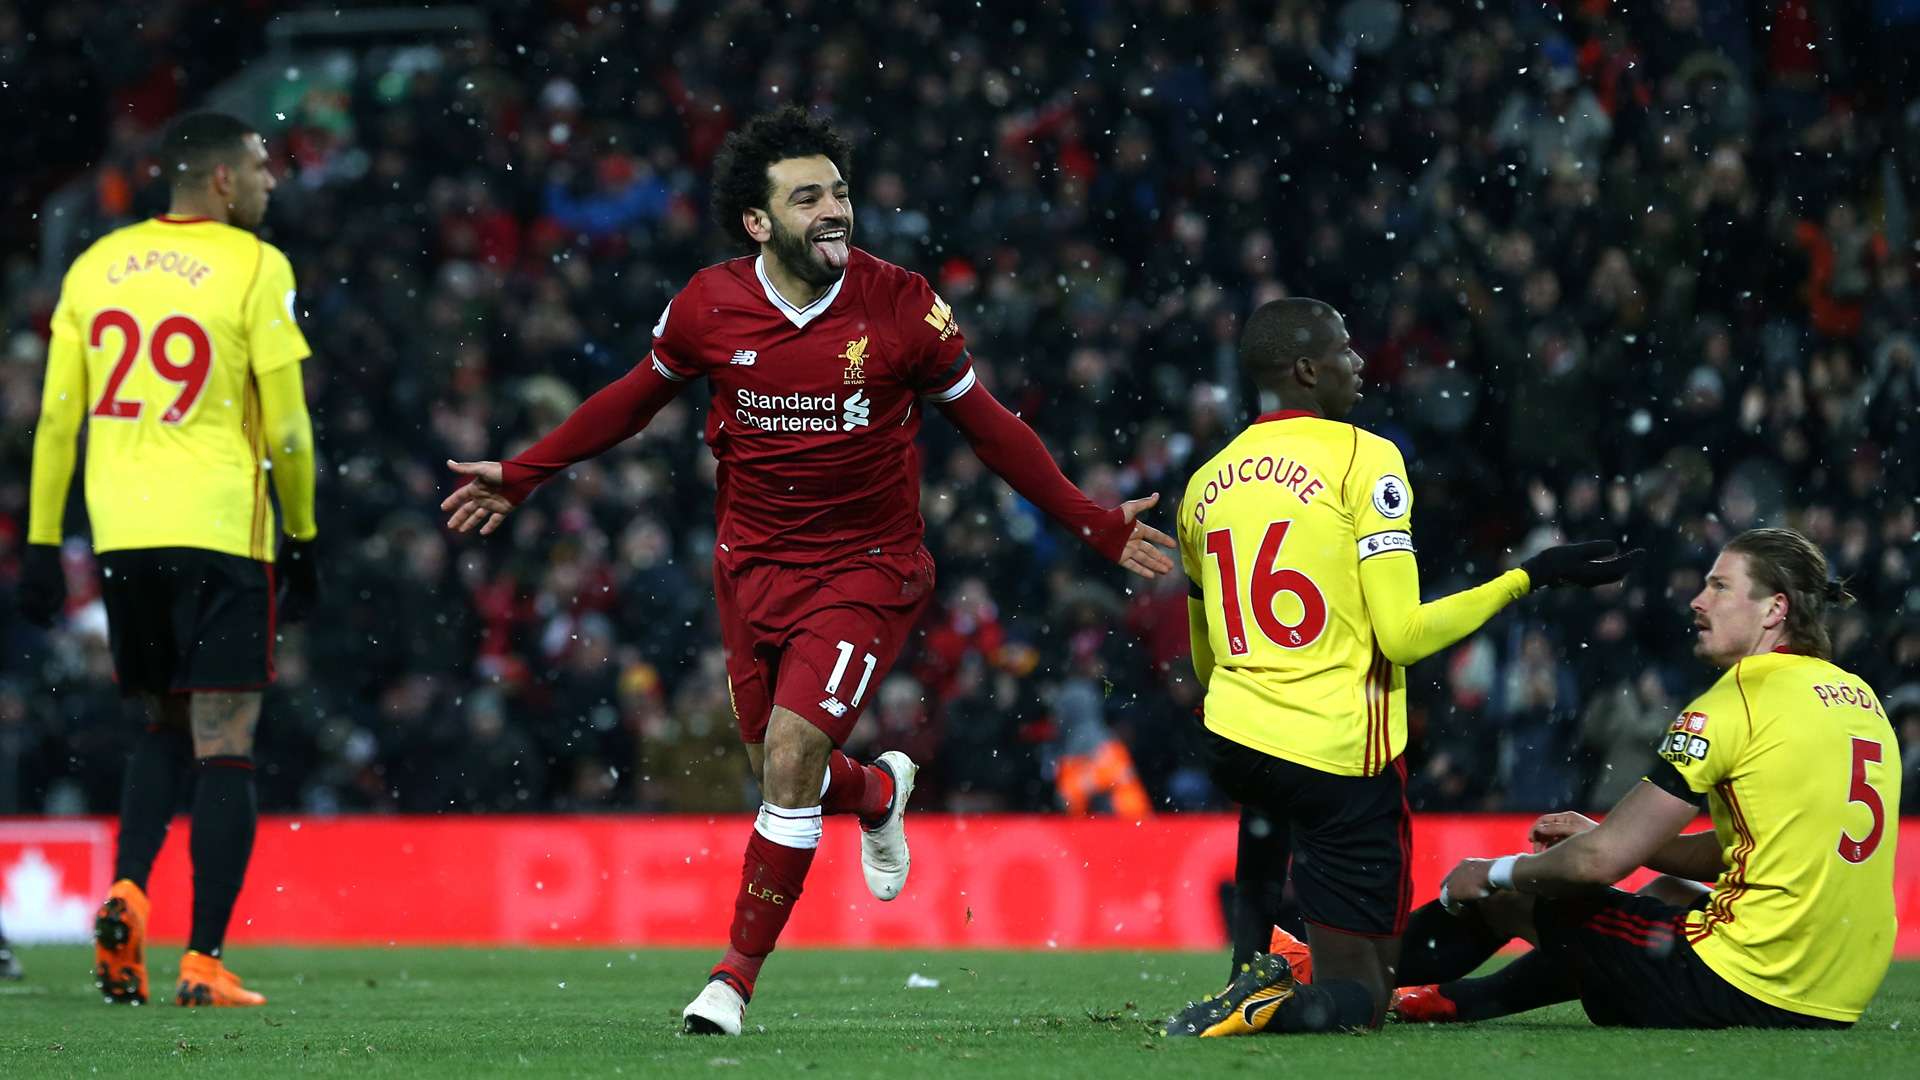 Mohamed Salah FC Liverpool